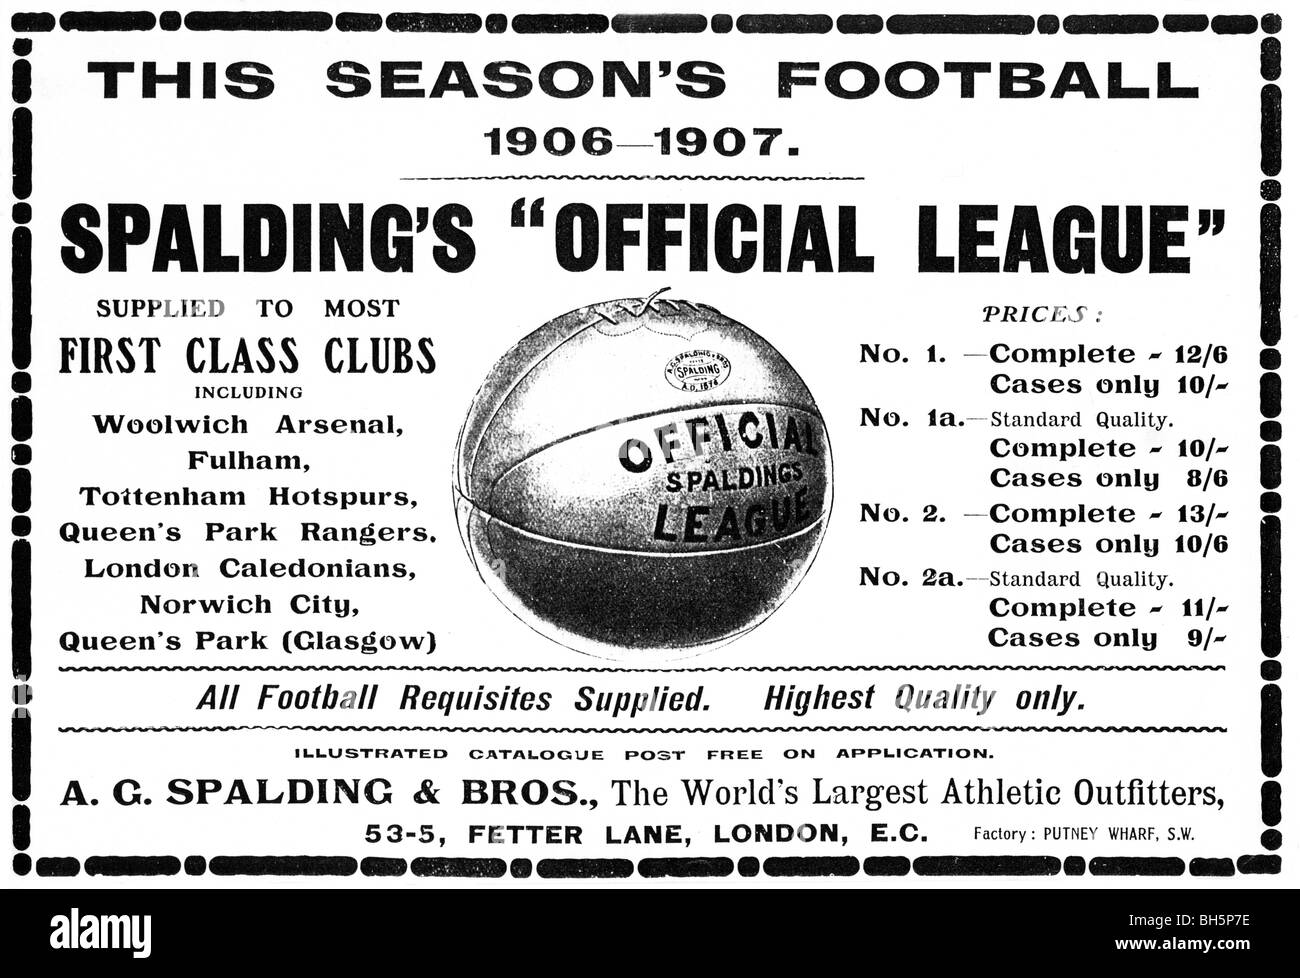 Spalding Football, 1906-Werbung für die englische offizielle Liga-Kugeln  von den meisten der Top-Clubs in dem Land verwendet Stockfotografie - Alamy